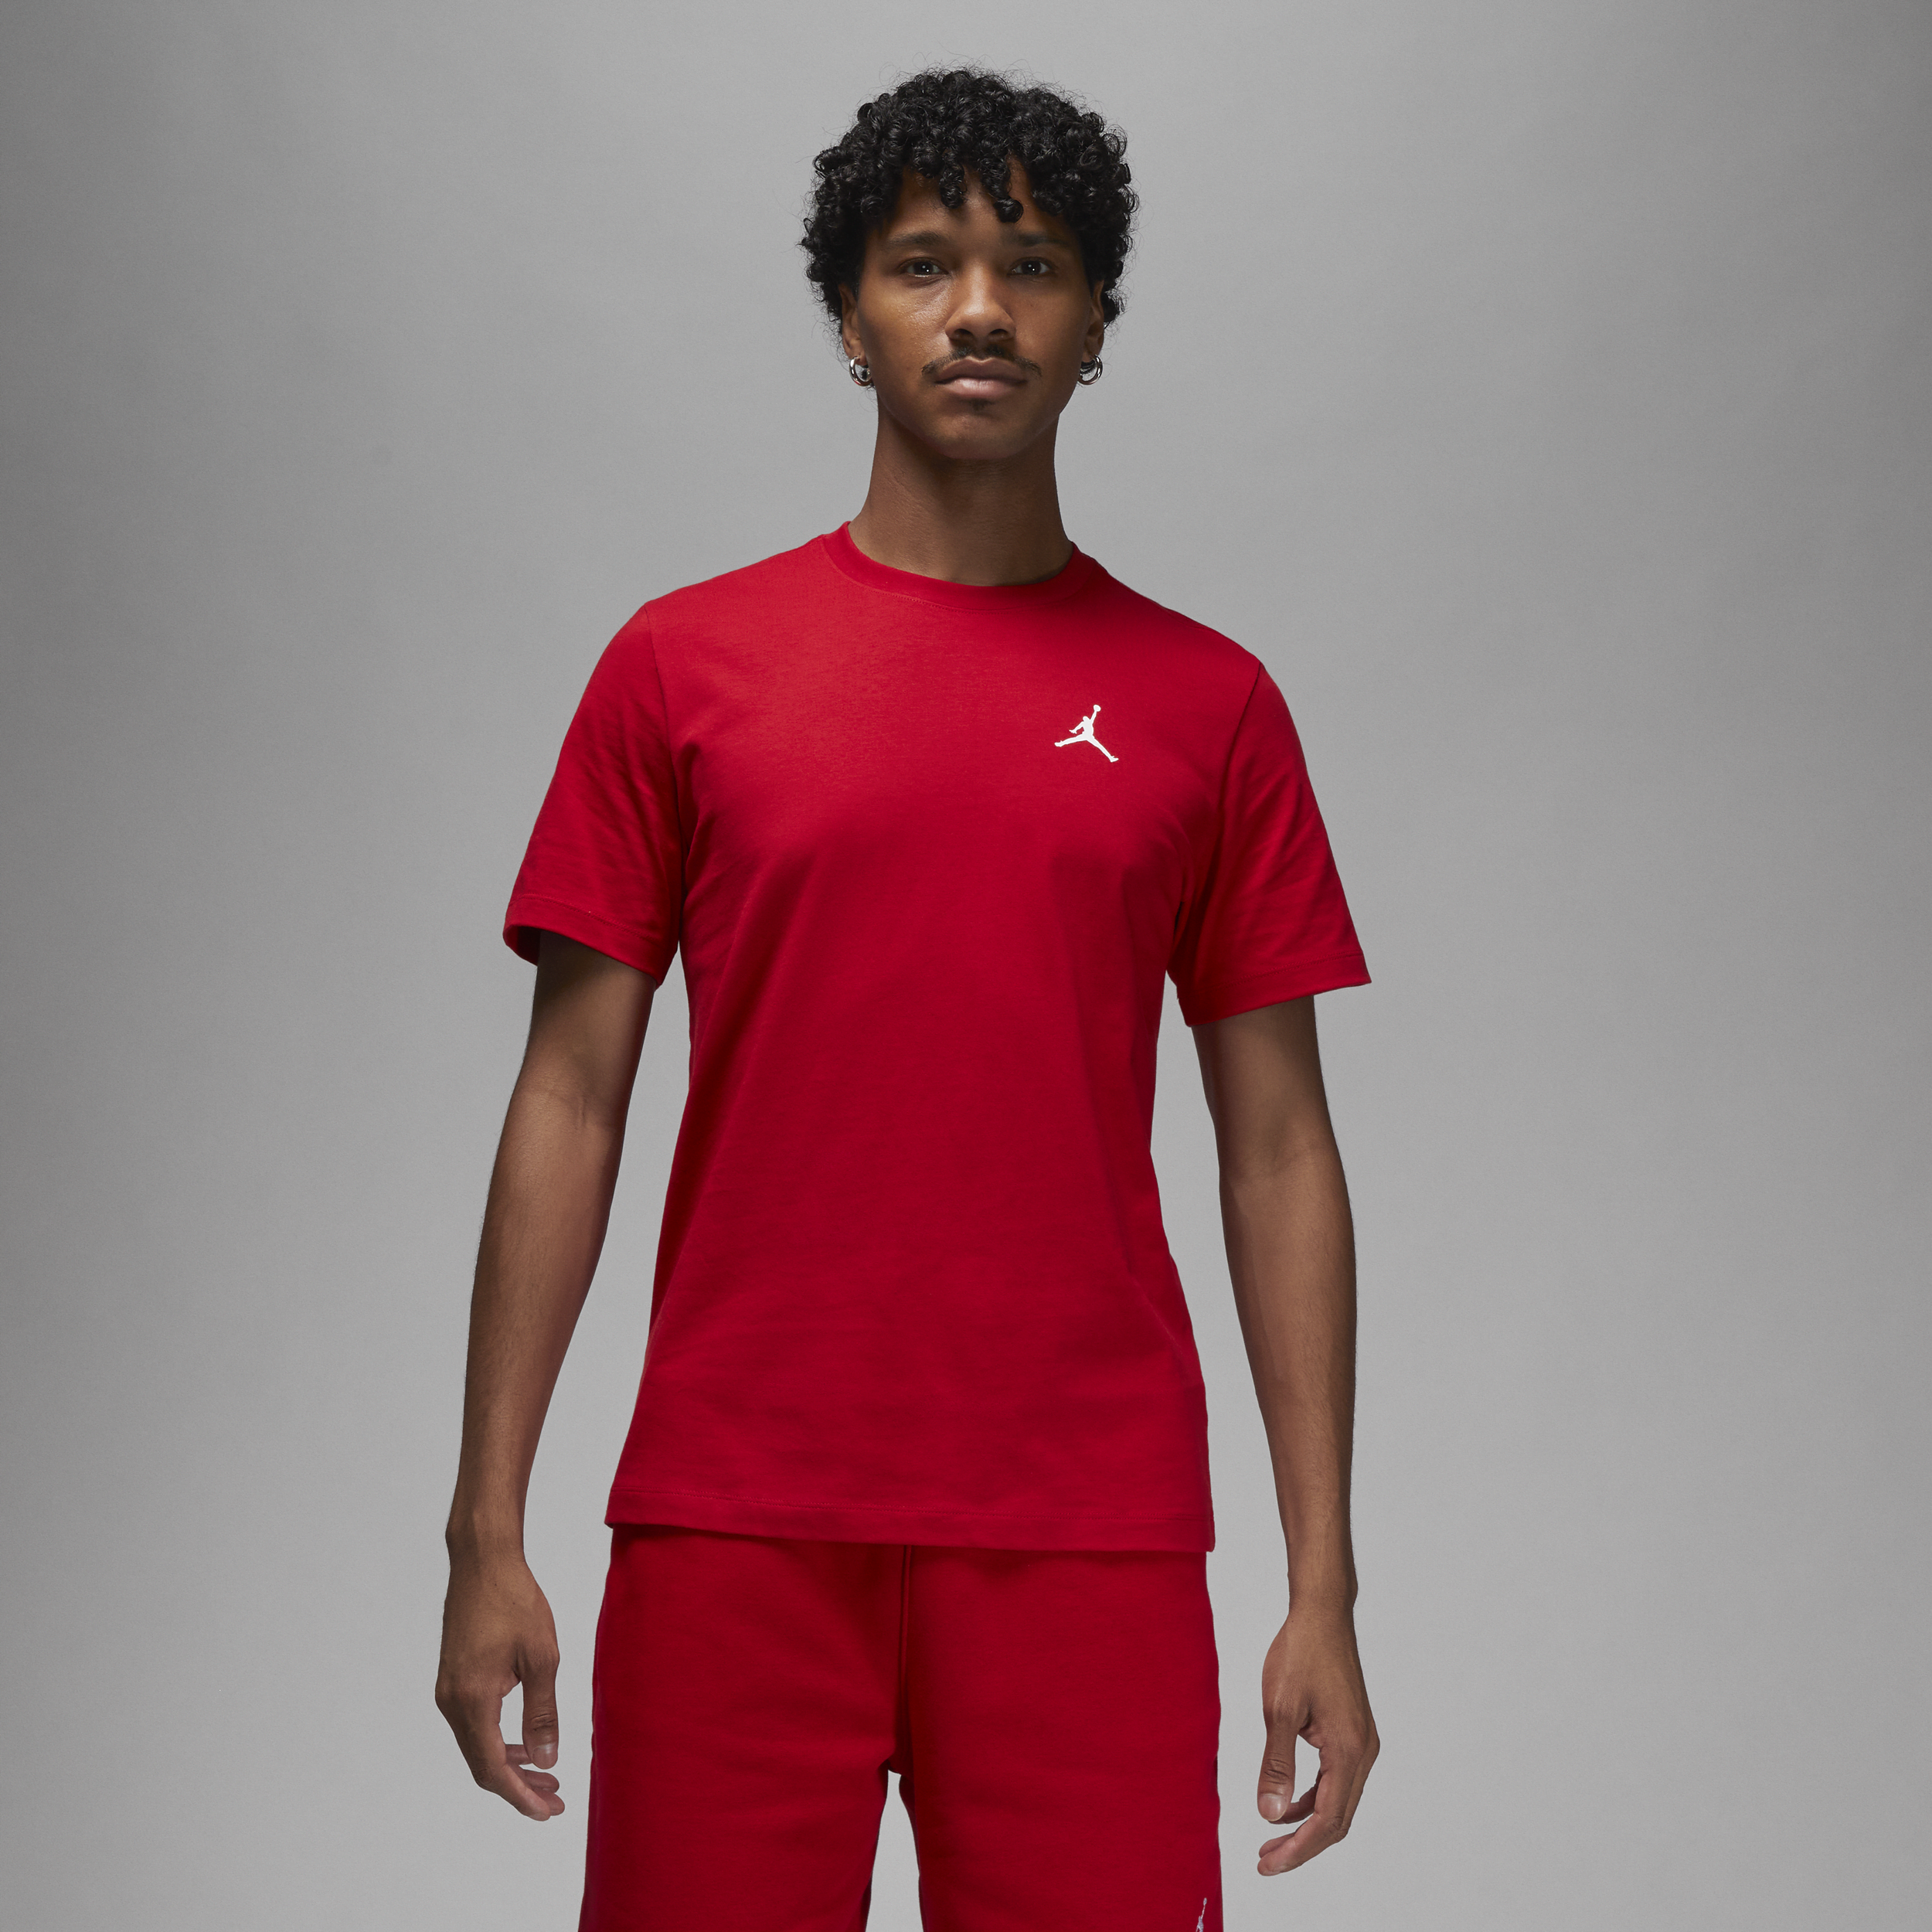 Jordan Brand Camiseta - Hombre - Rojo